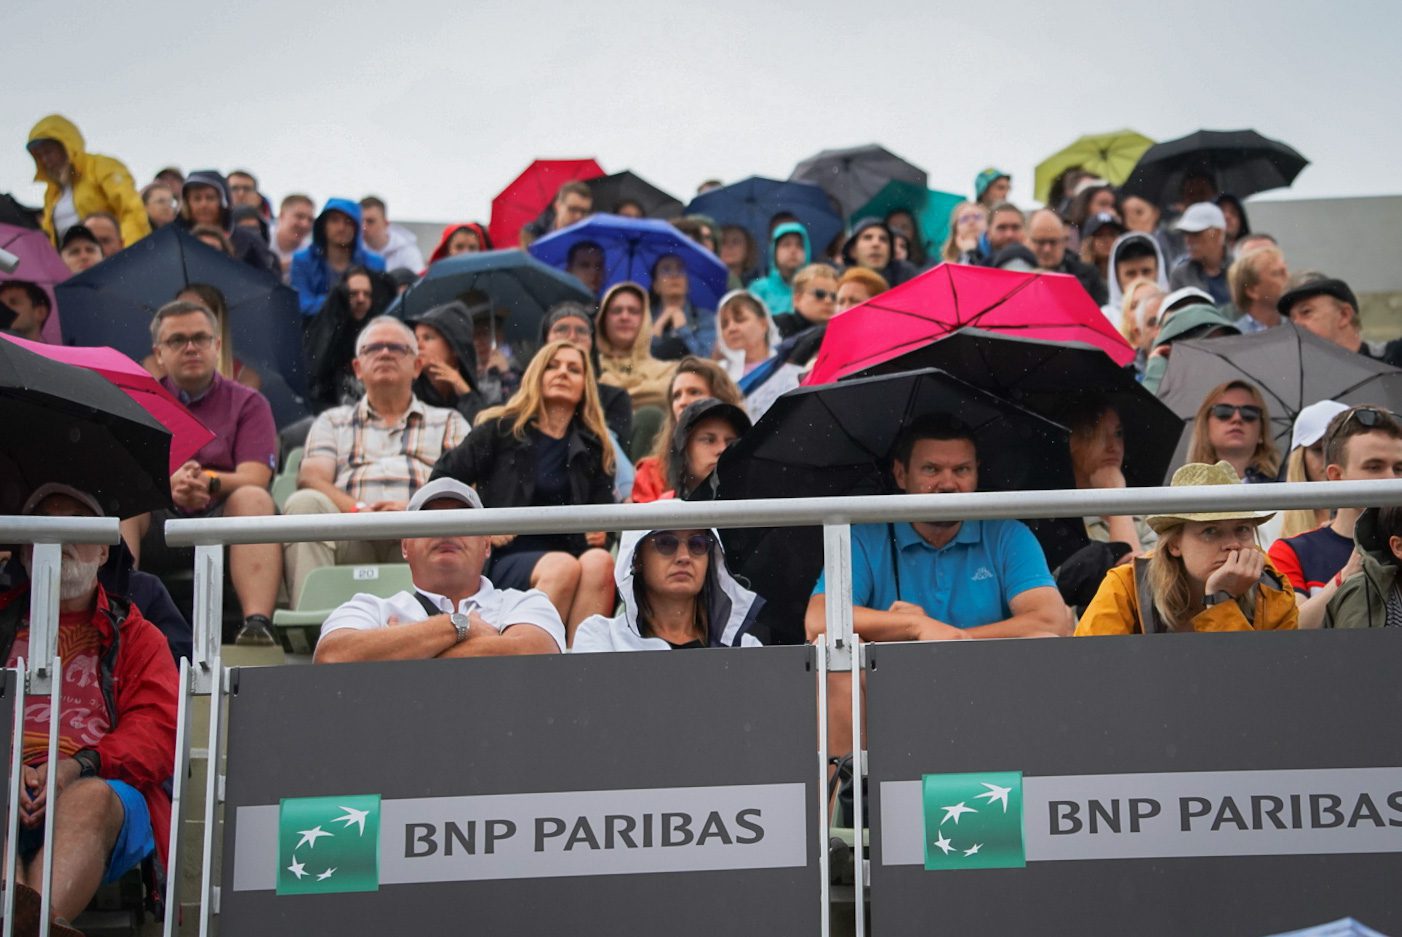 Caroline Garcia i Ana Bogdan zagrają w finale turnieju BNP PARIBAS Poland Open